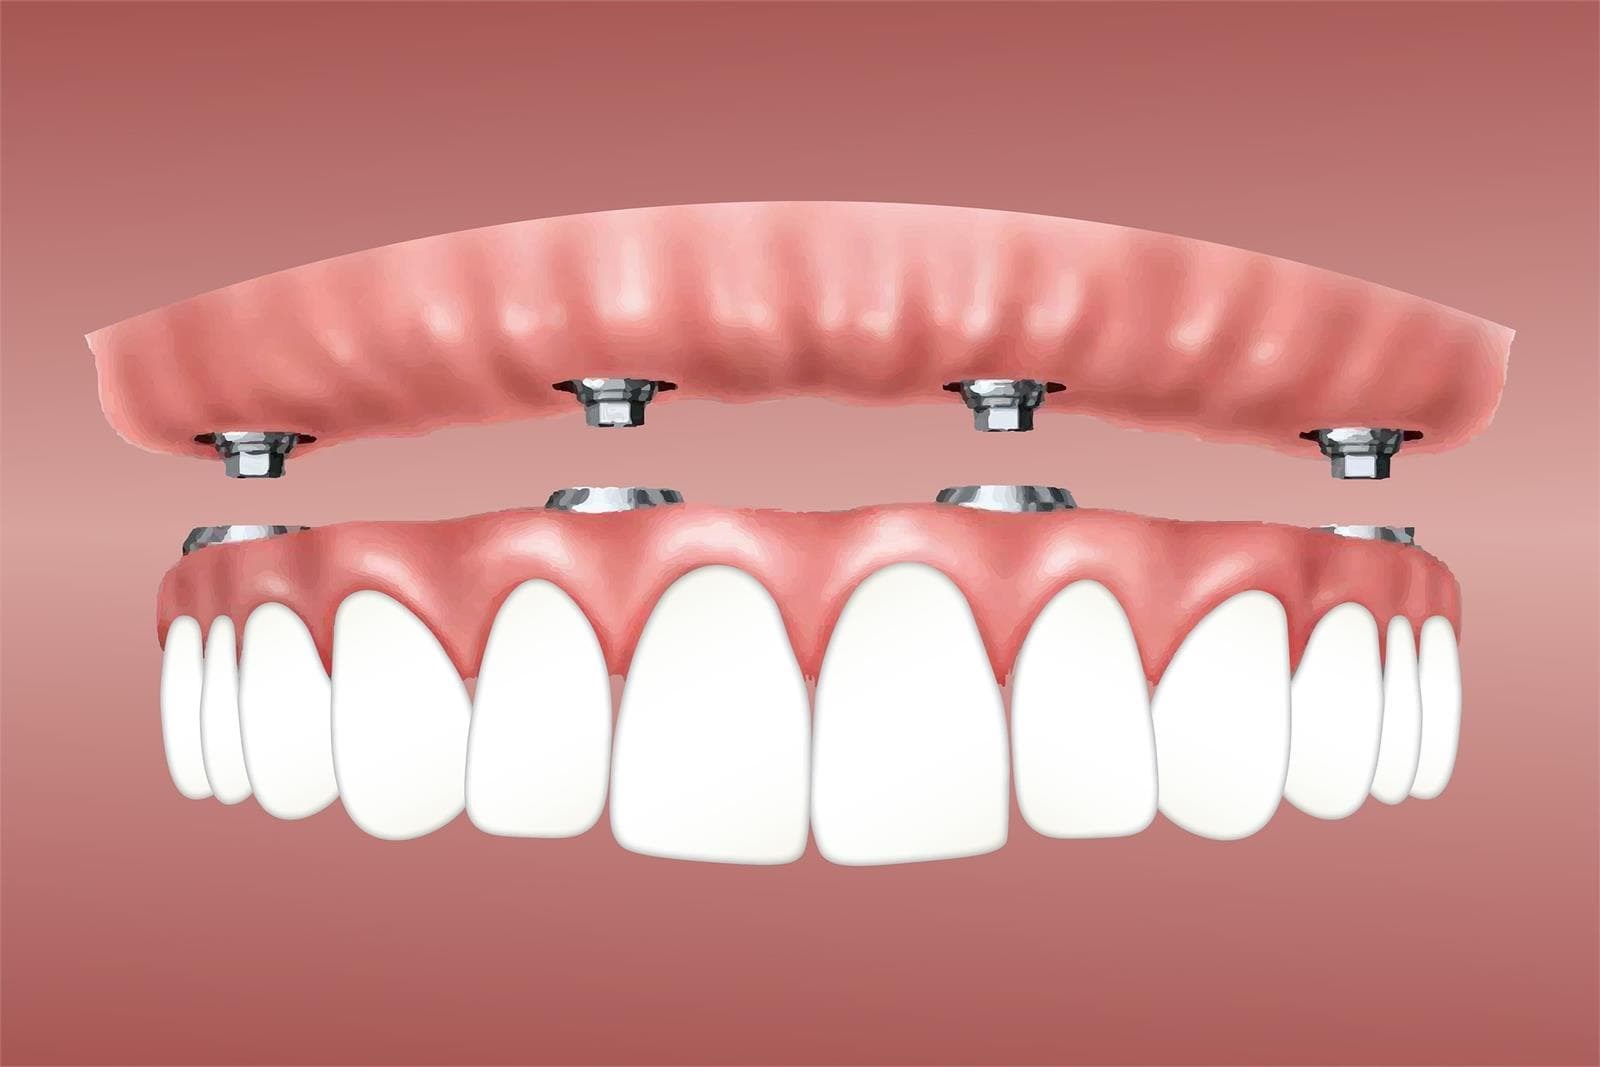 ¿Cómo se coloca un implante dental? - Imagen 1